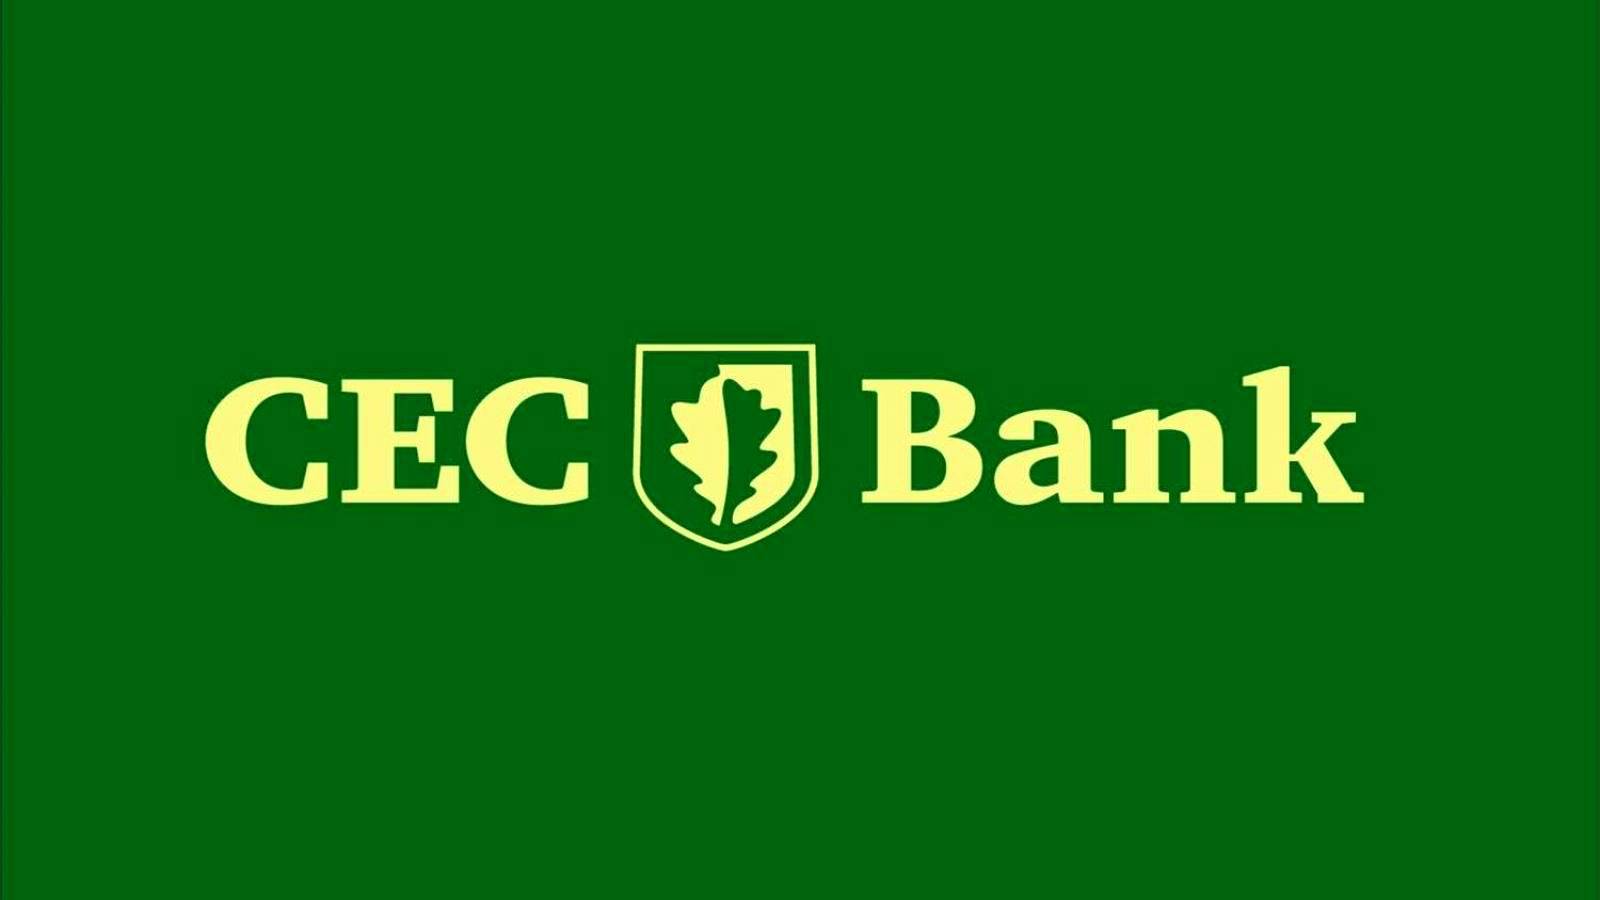 Meddelande om CEC Banks större åtgärd officiellt bekräftad till alla kunder